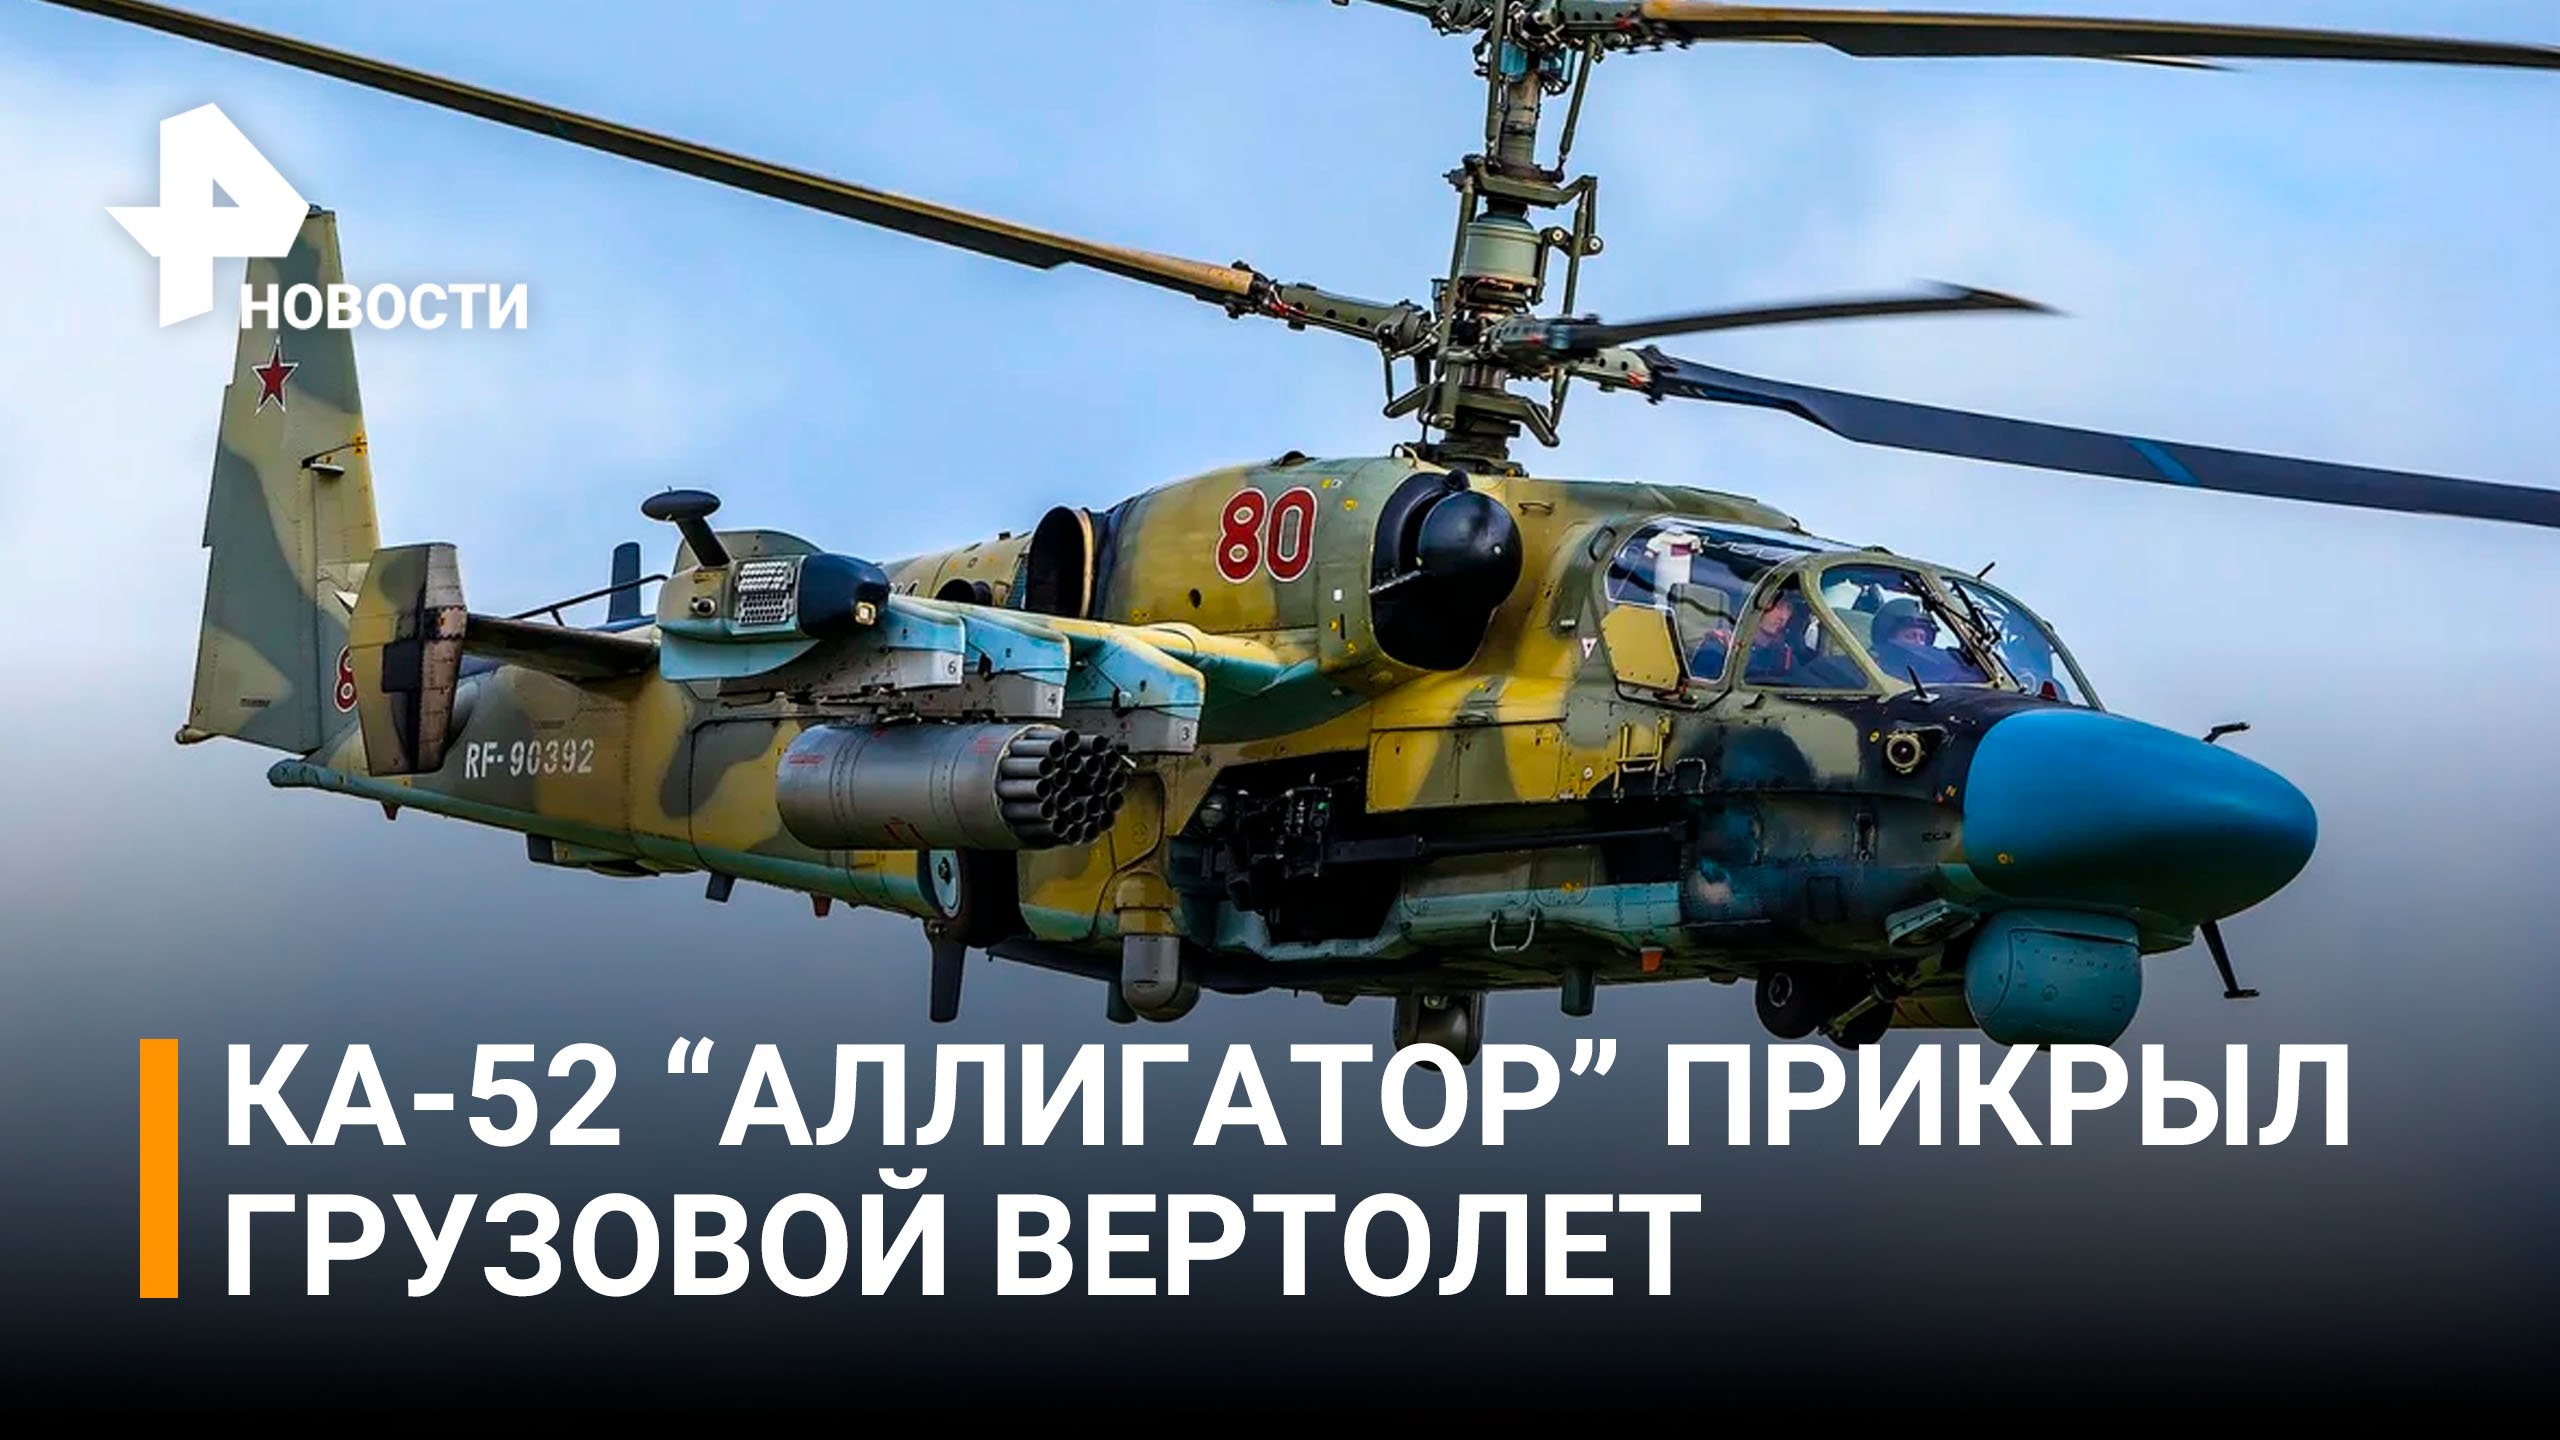 Ка-52 выполняют боевые задачи по прикрытию Ми-8 / РЕН Новости